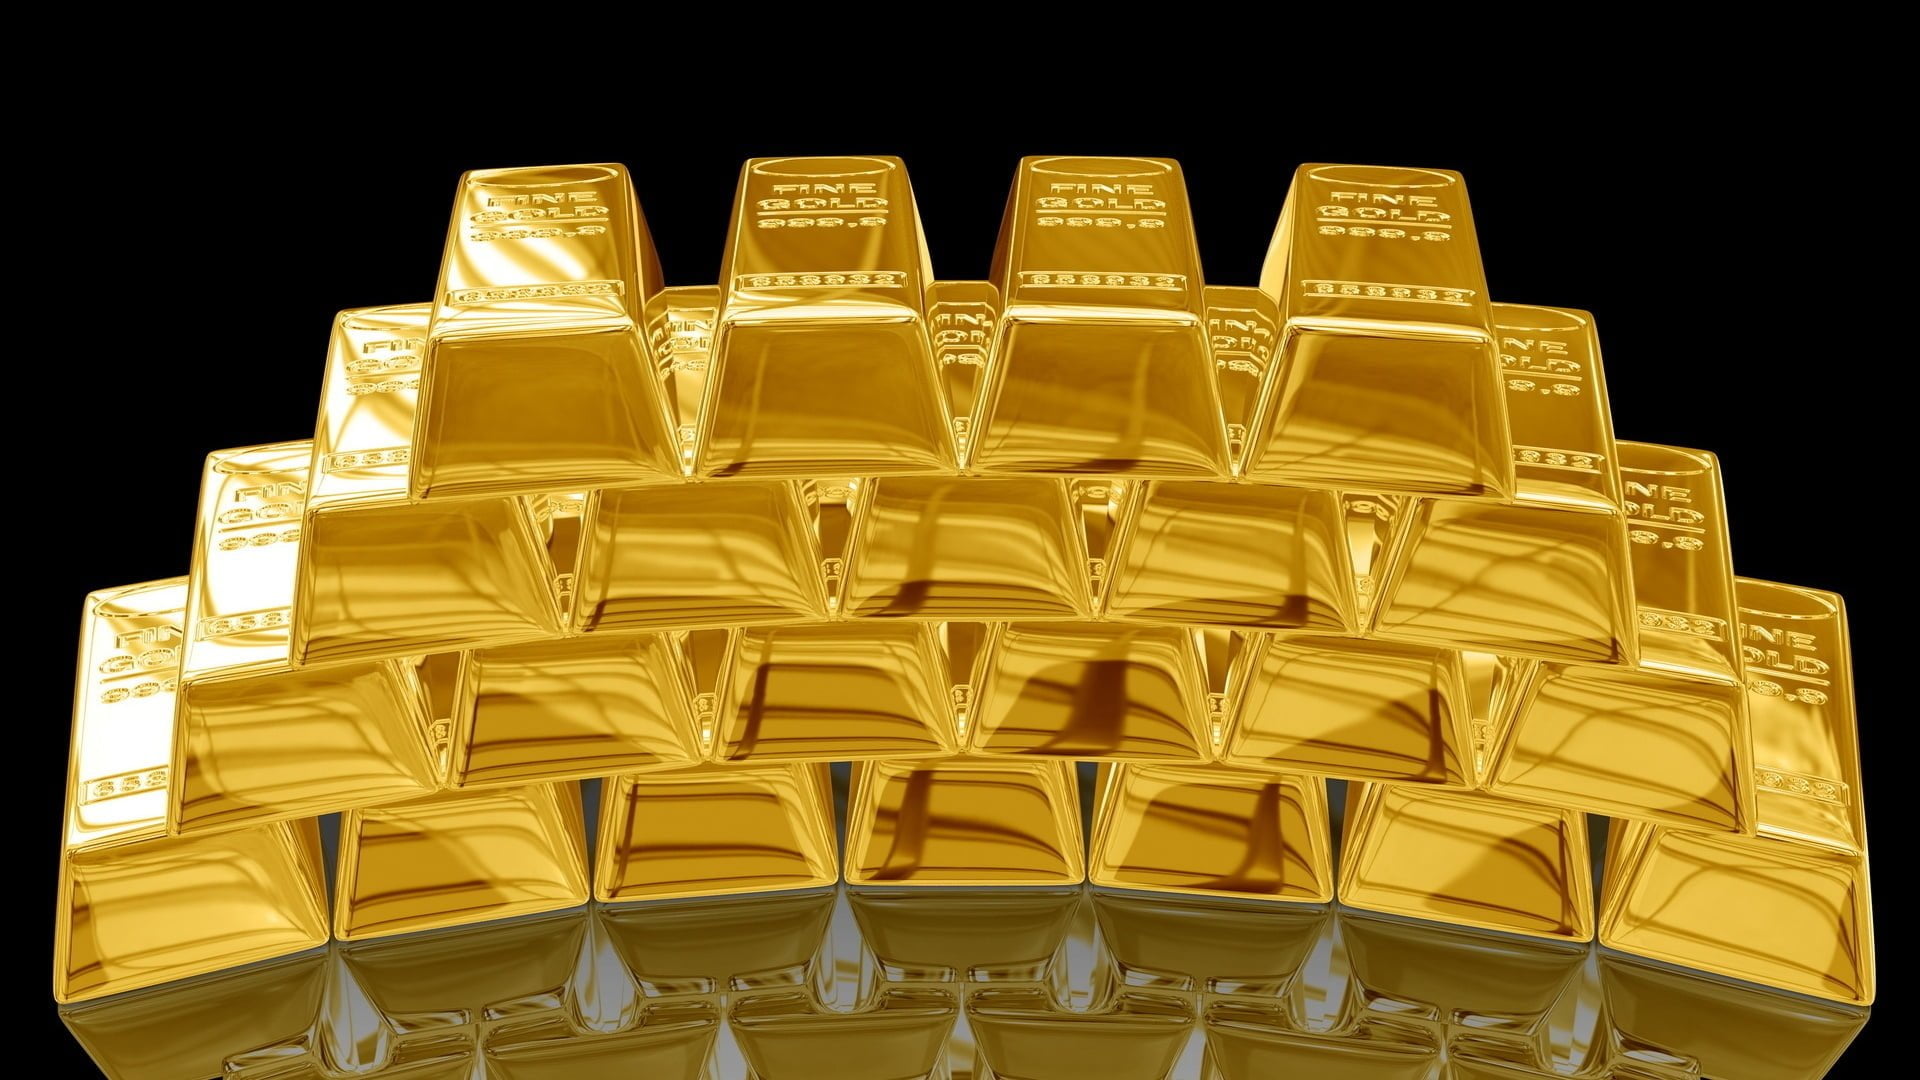 أسعار الذهب اليوم الأحد في مصر وارتفاع عيار 21 المصري GOlDEN EGYPT